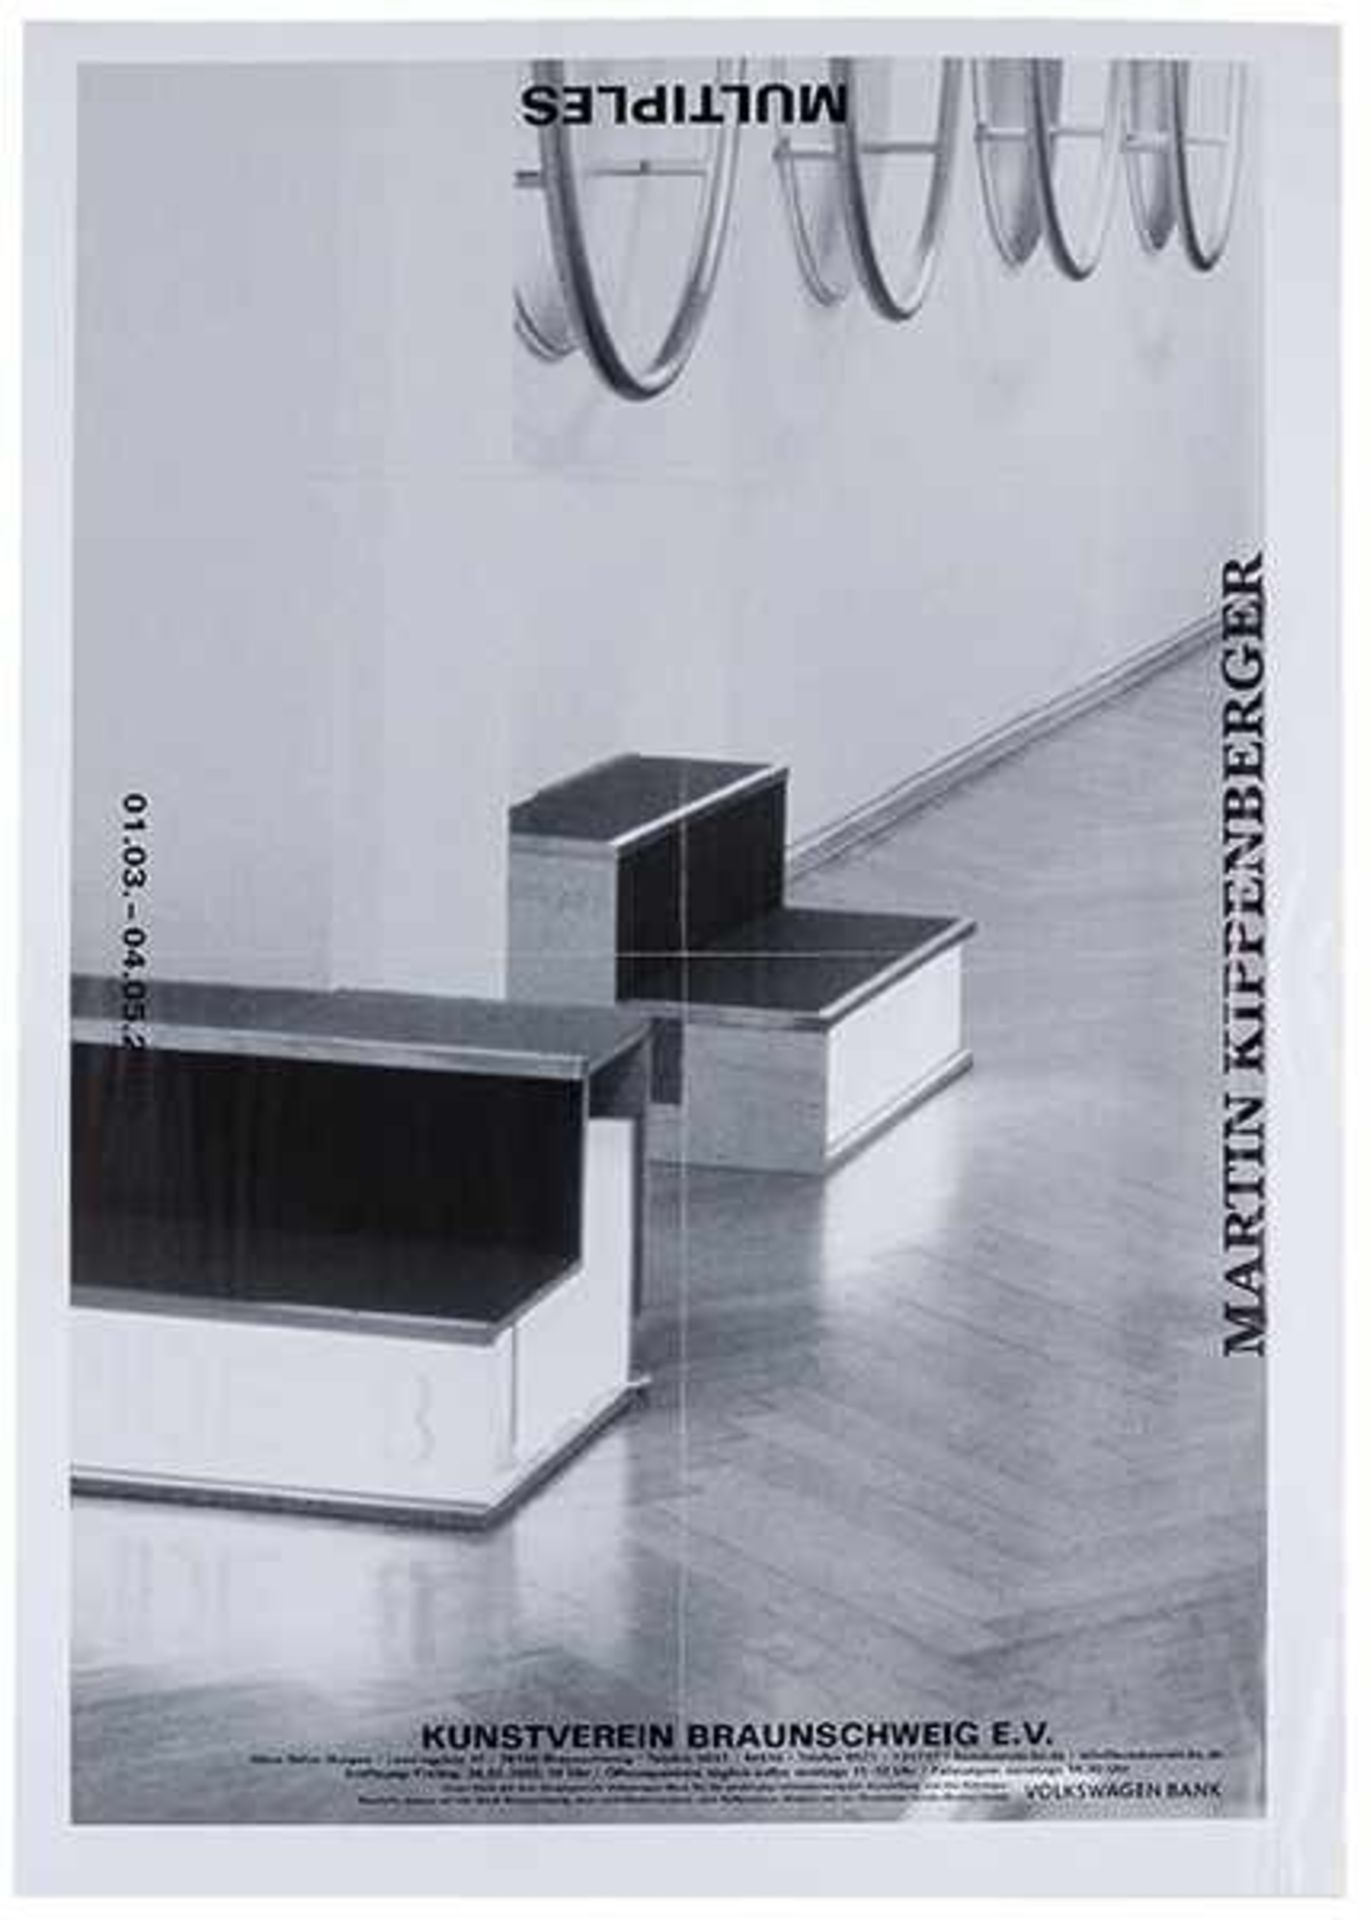 Kippenberger, Martin. Multiples. Plakat zur Ausstellung des Braunschweiger Kunstvereins, 2003.